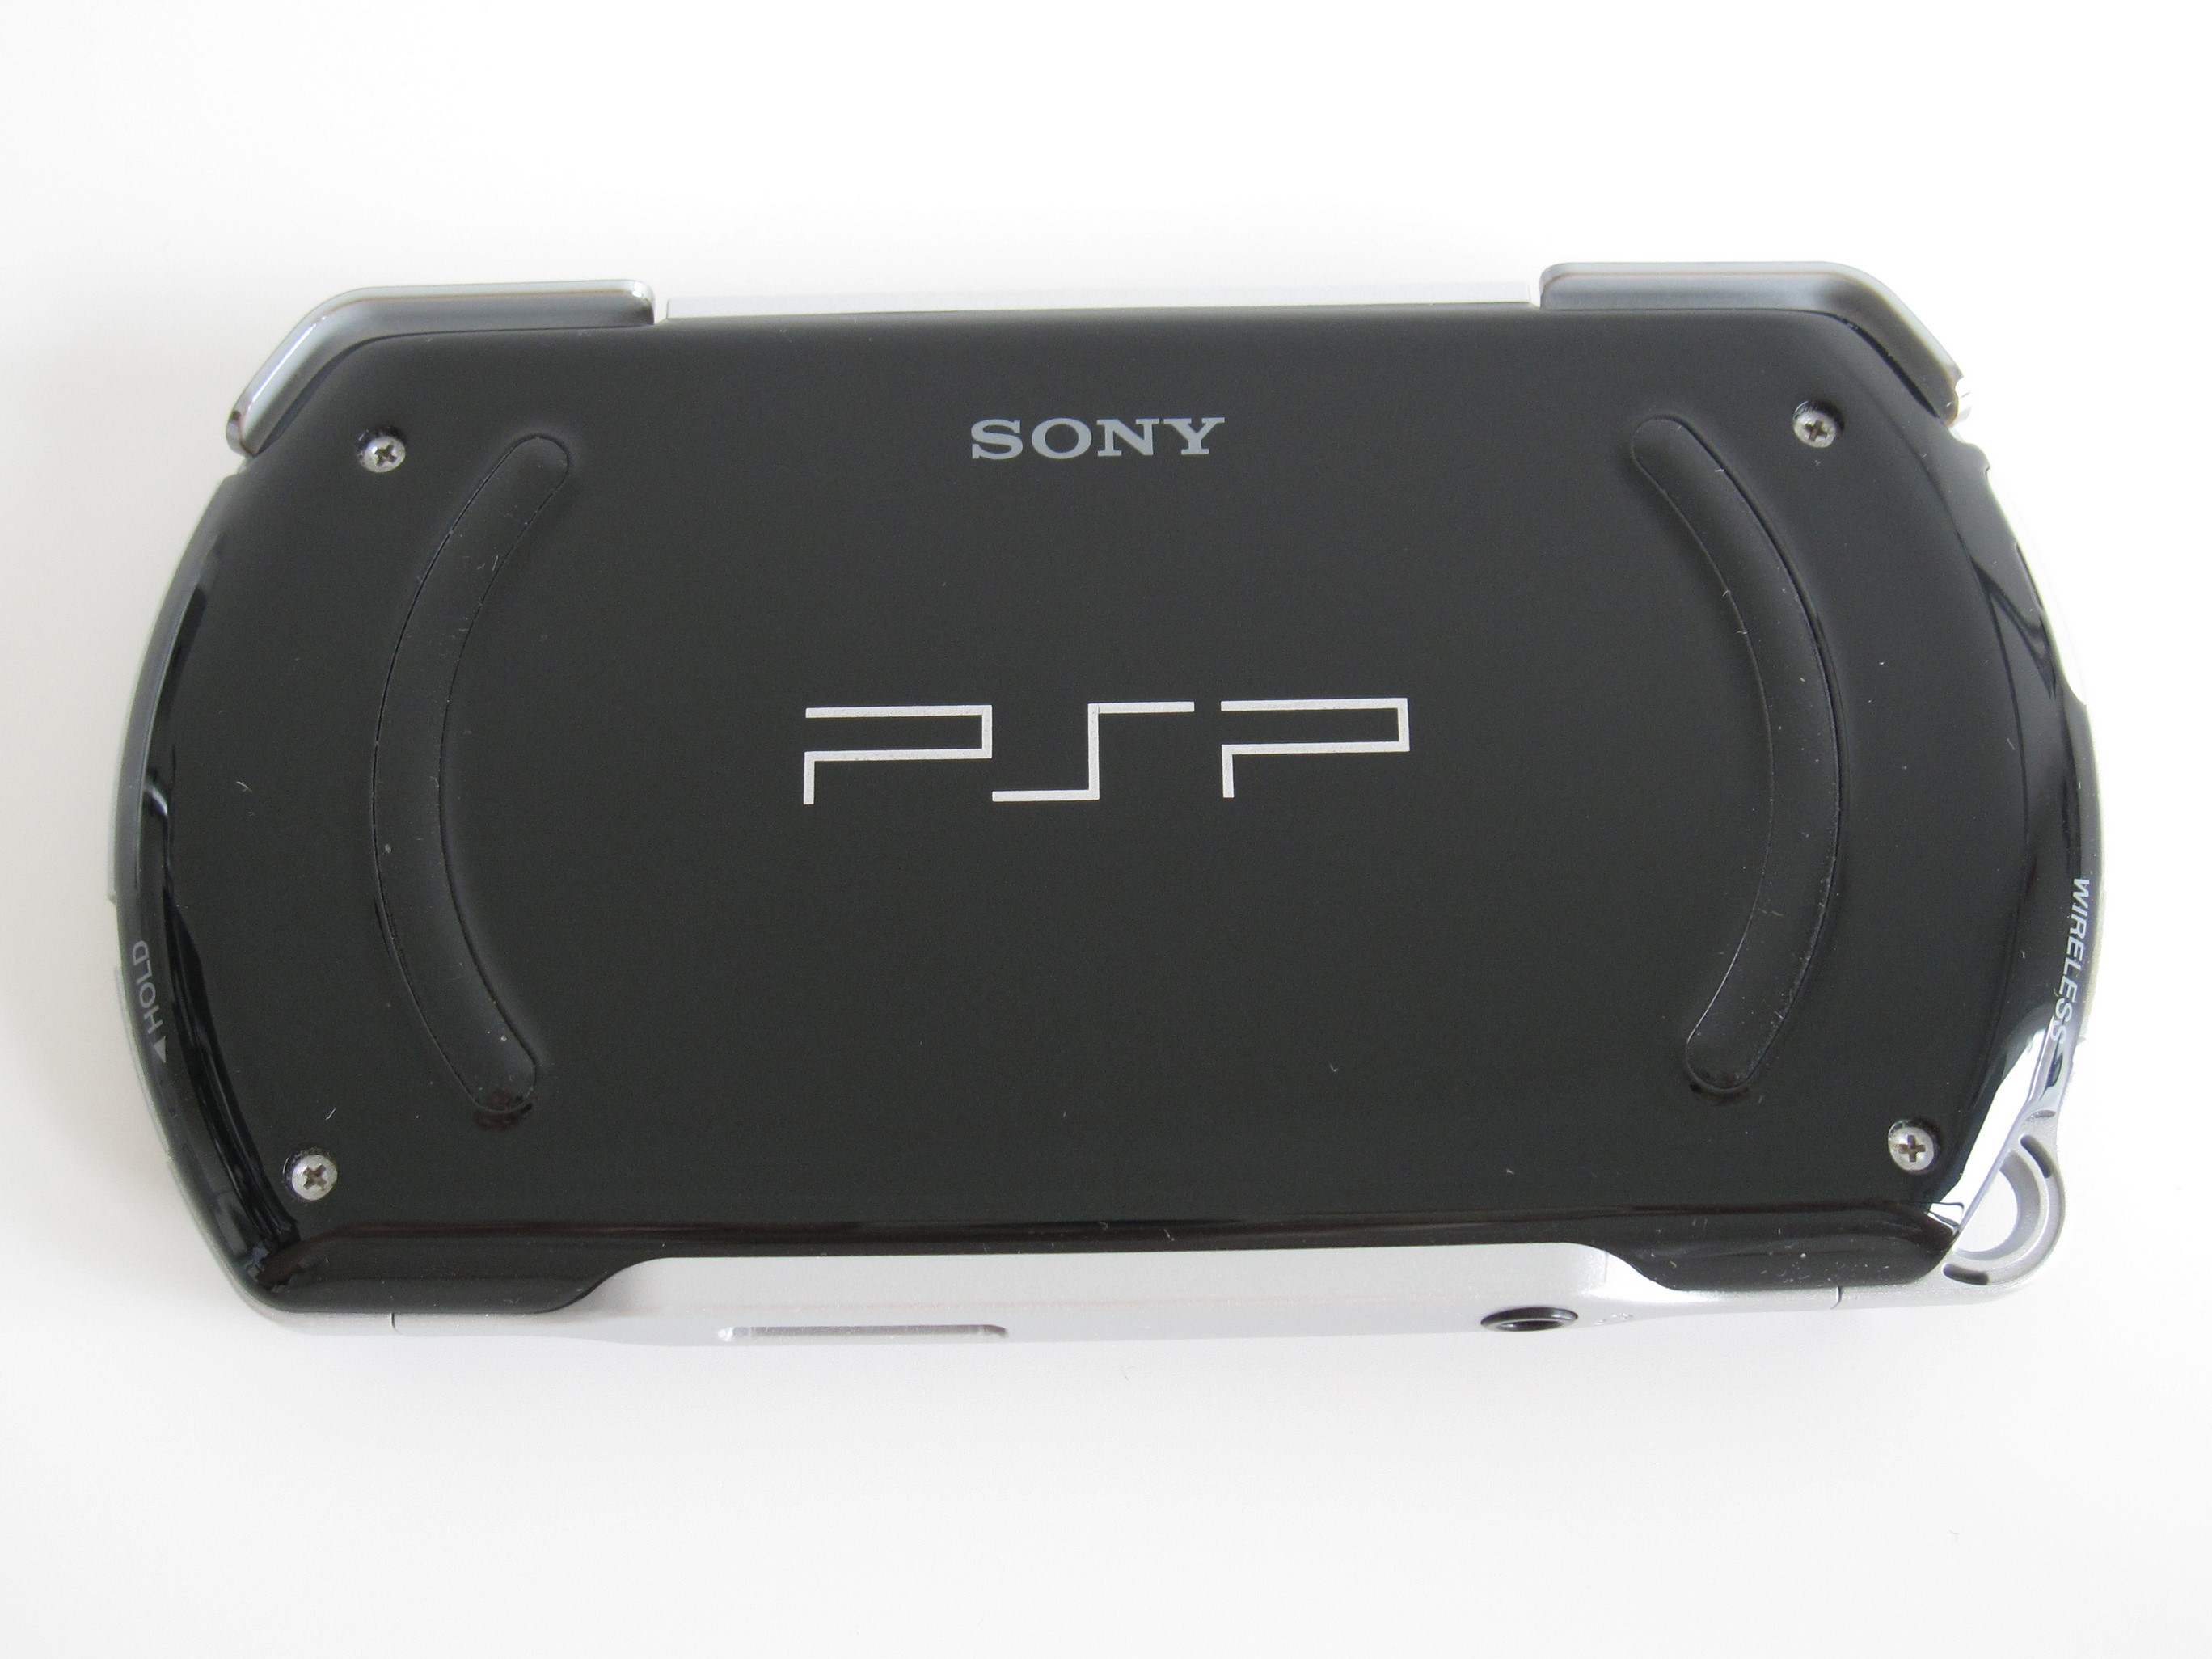 移动设备收藏展示第11集索尼PSP 系列| Bill Haofei Gong's Blog